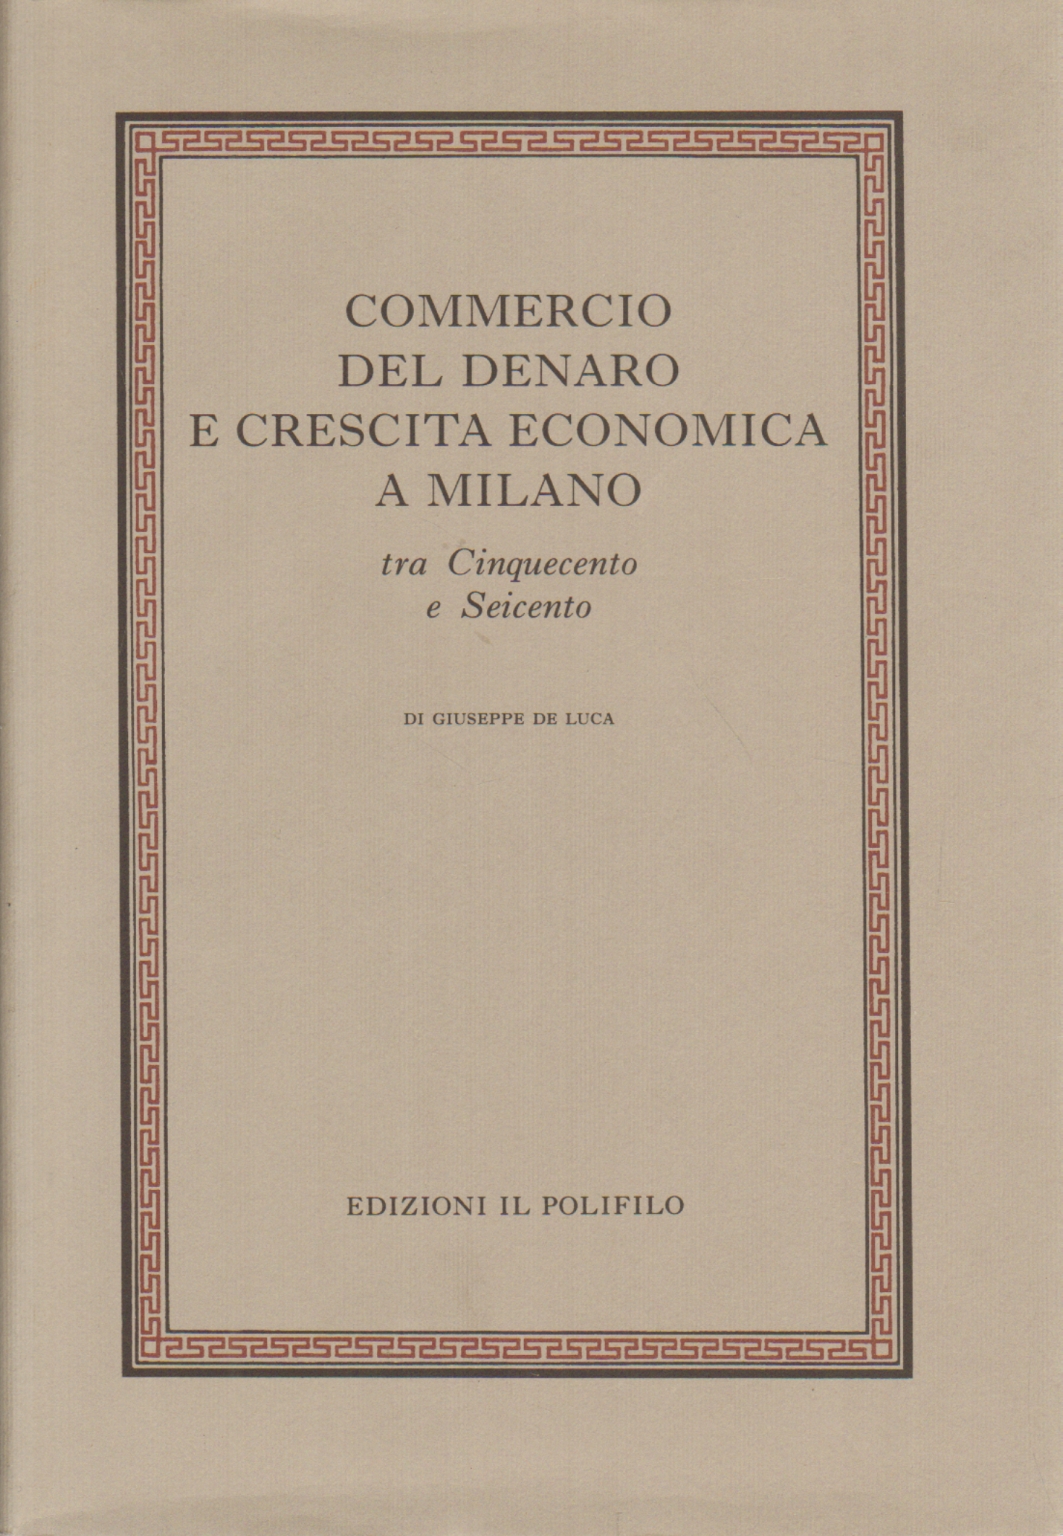 Commercio del denaro e crescita economica a Milano, Giuseppe De Luca